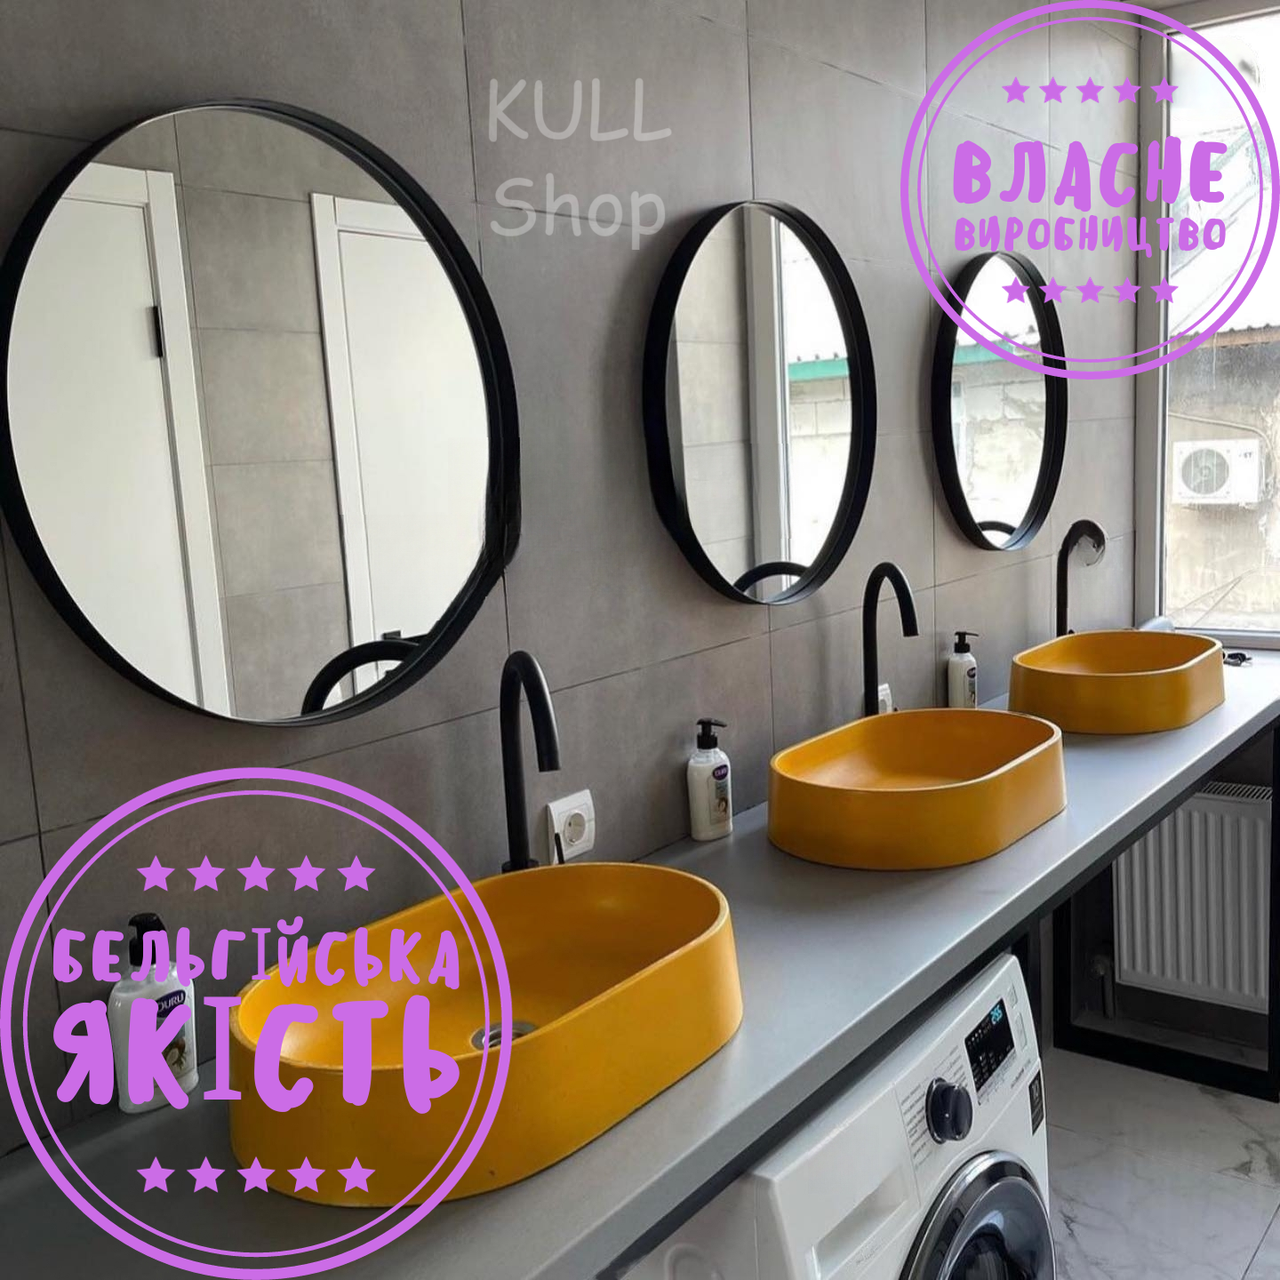 Вологостійке кругле дзеркало в чорній/білій тонкій металевій рамі для ванної кімнати, санвузла, вбиральні чи туалету O_o